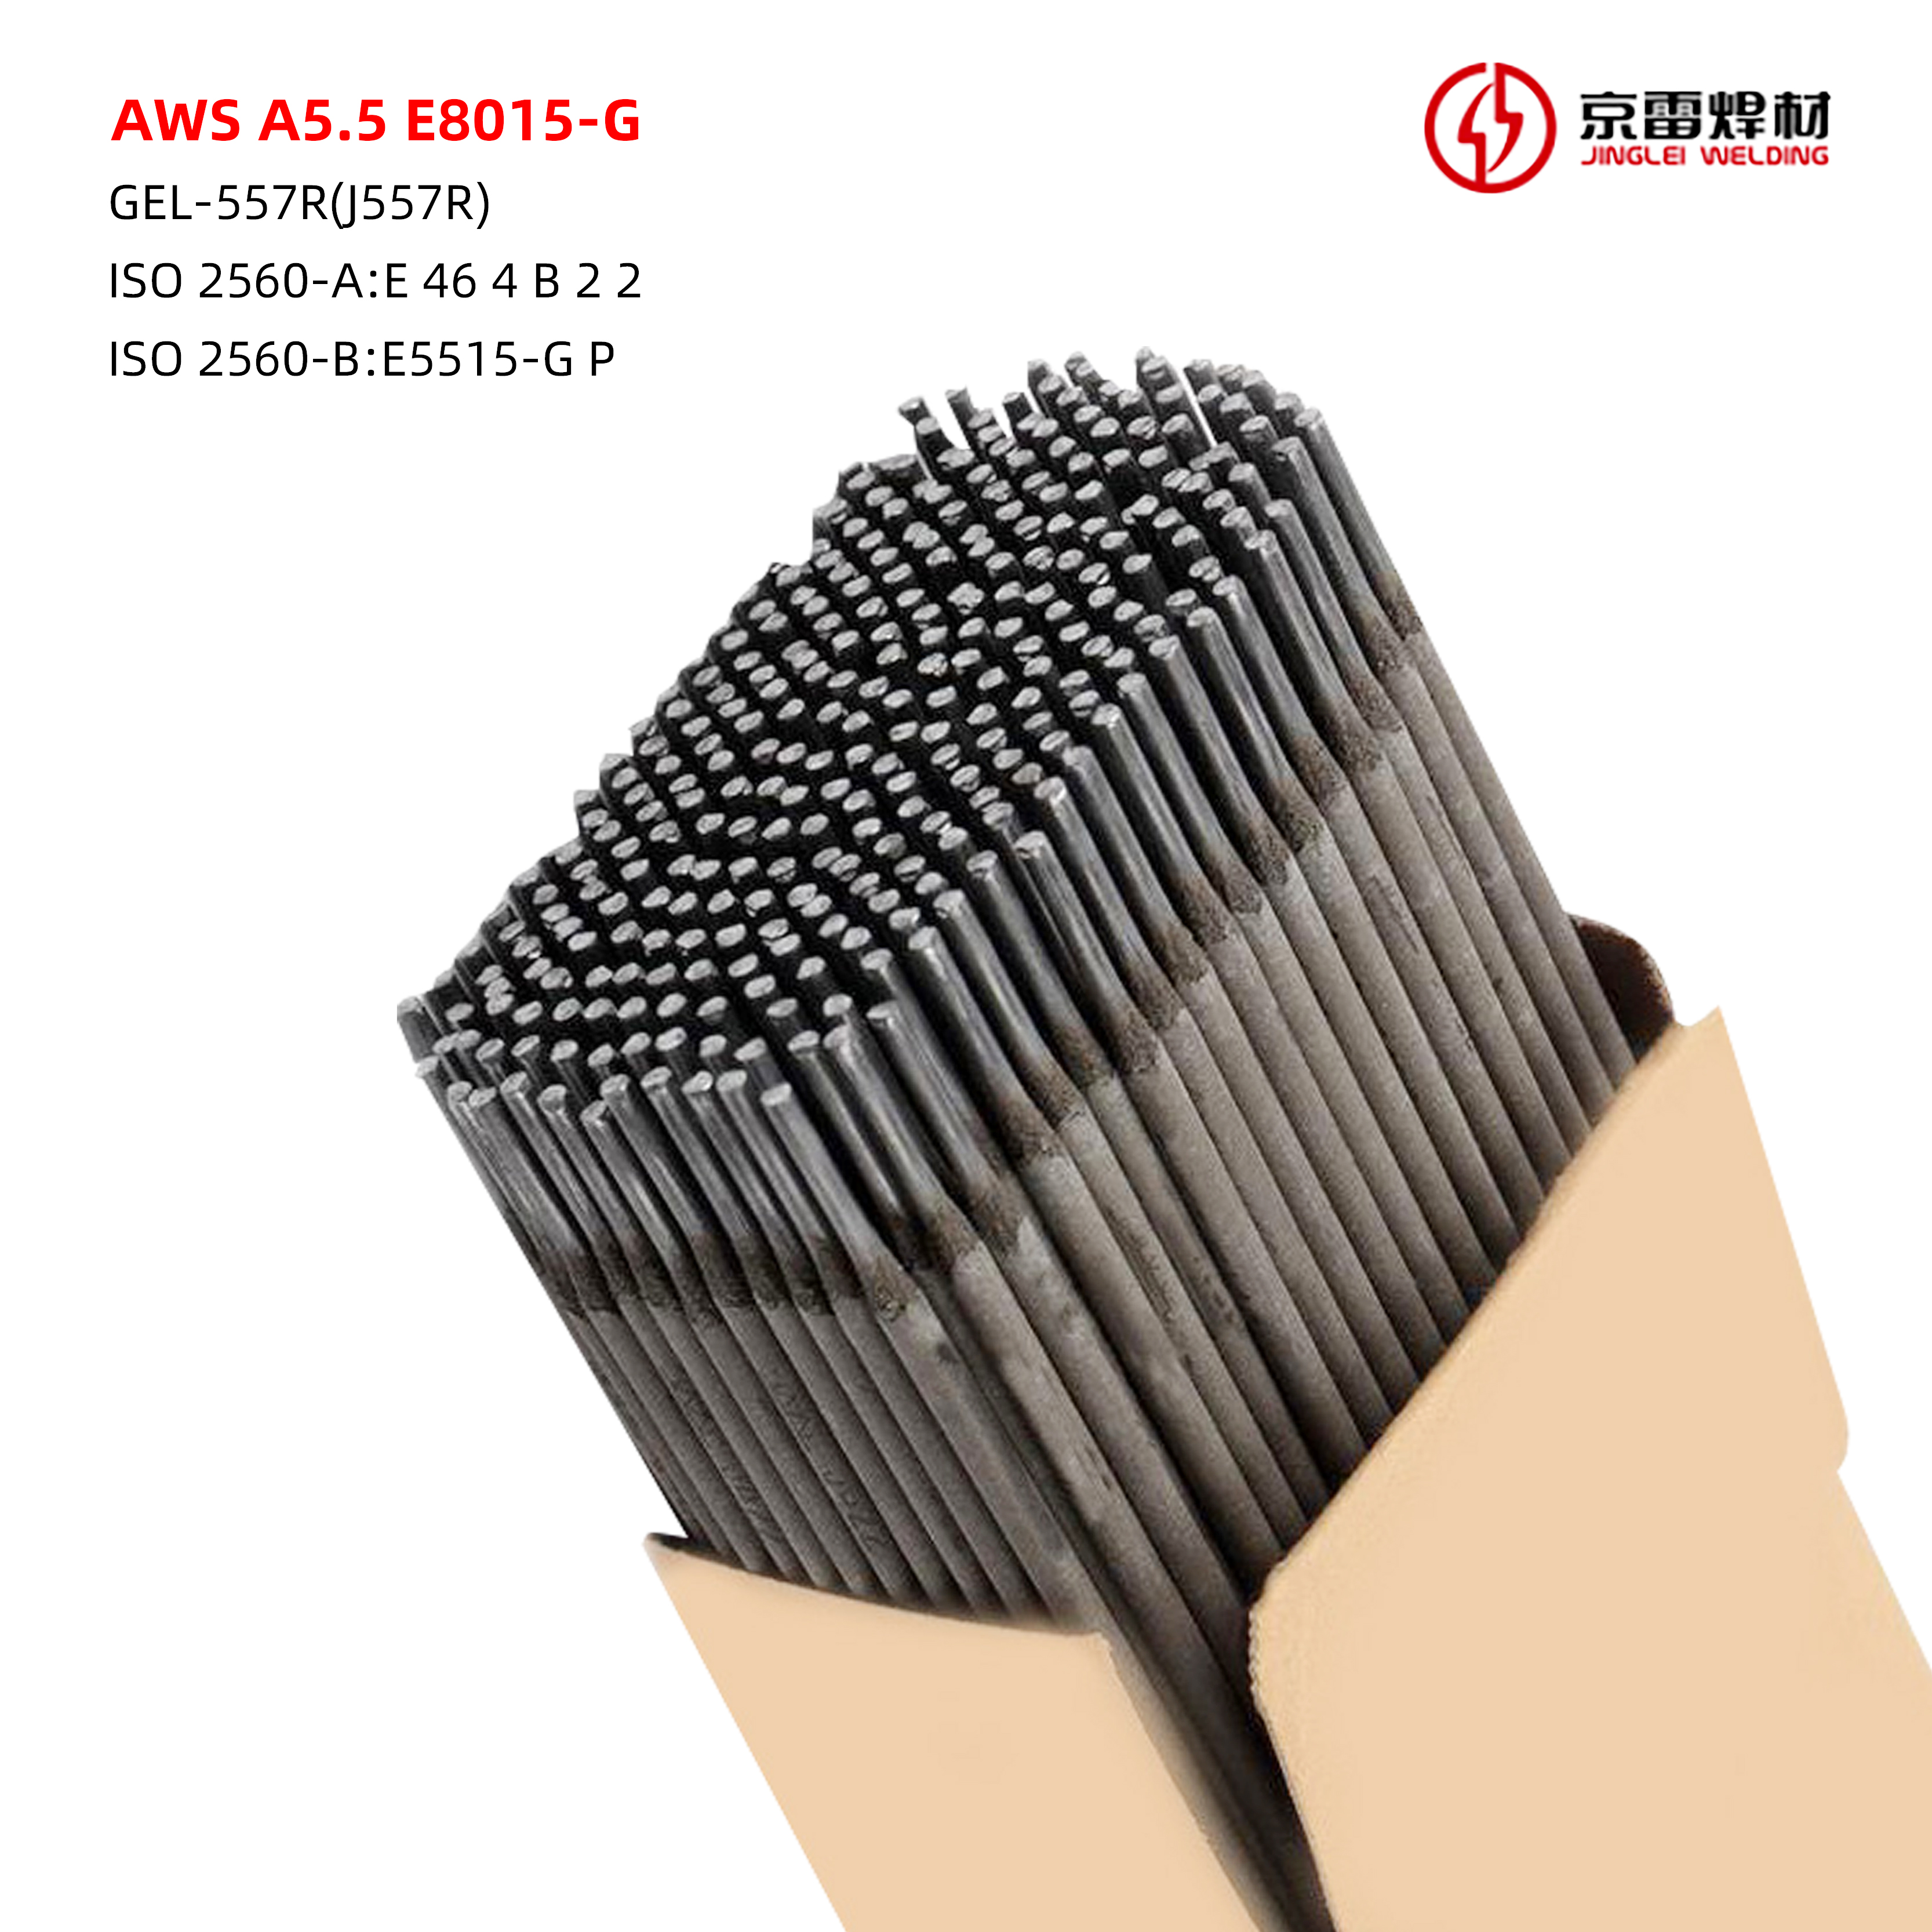 AWS A5.5 E8015-G 01